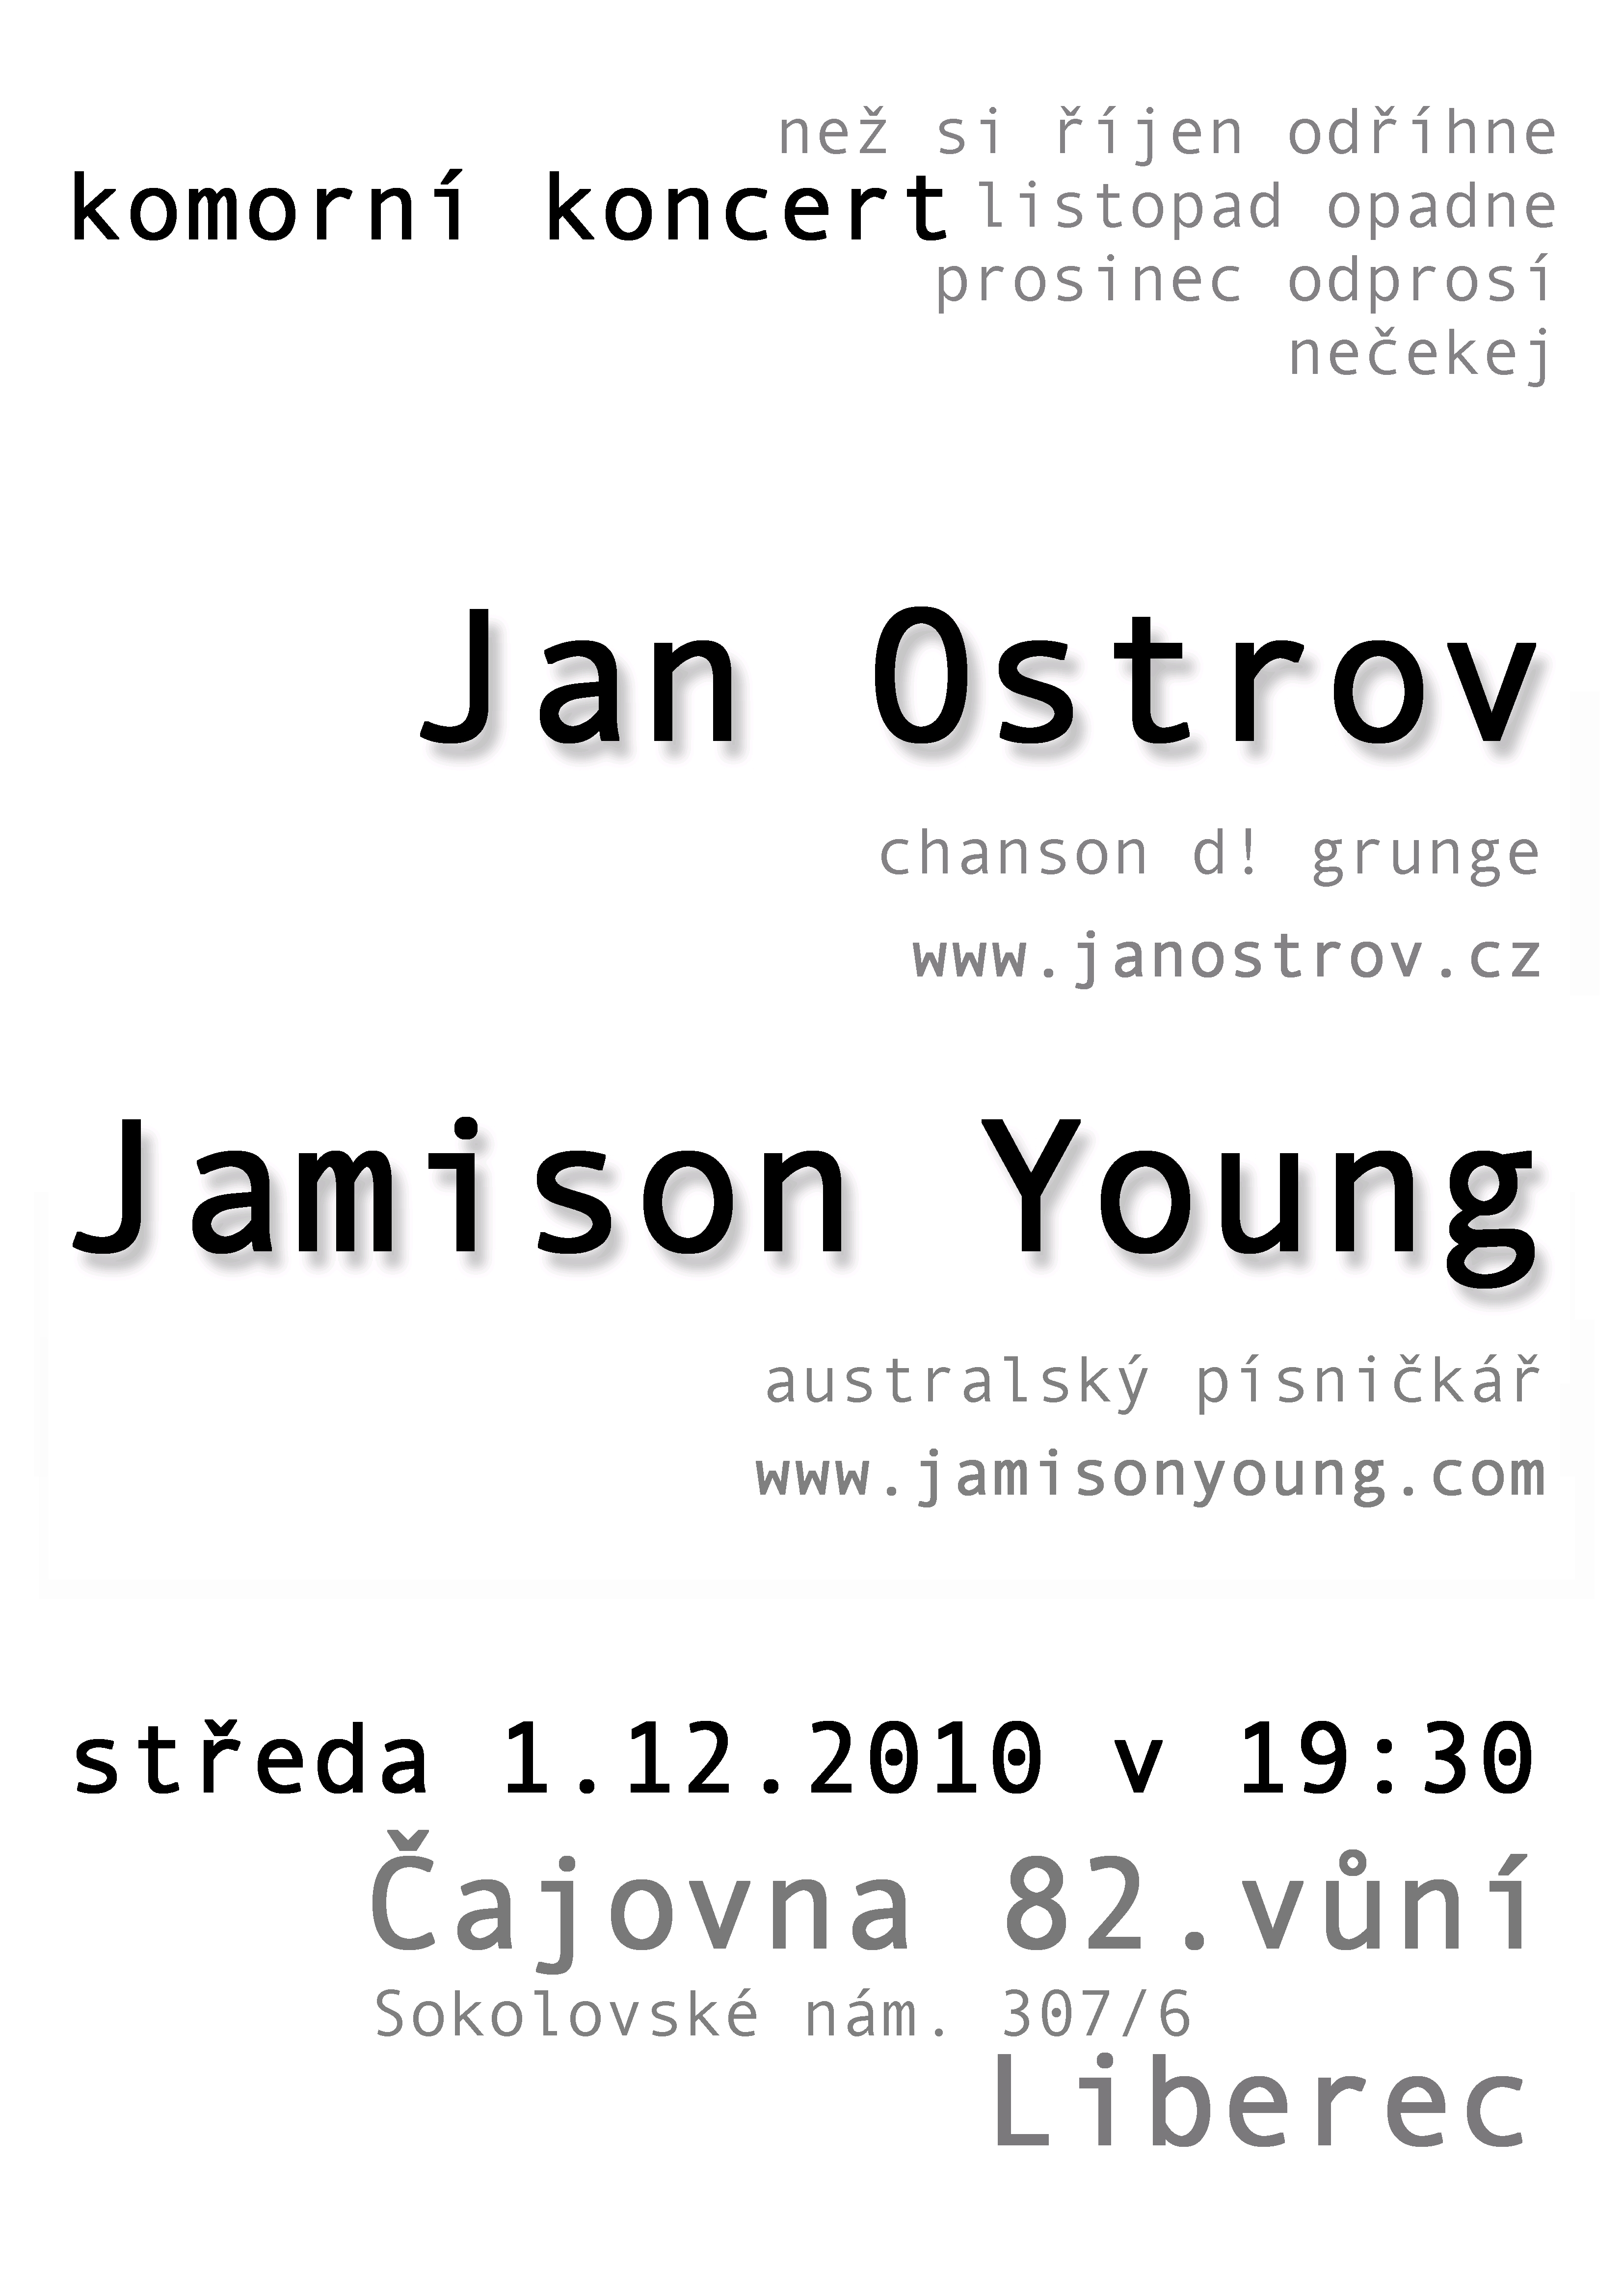 Společný koncert písničkářů | Jan Ostrov a Jamison Young 1. 12. 2010